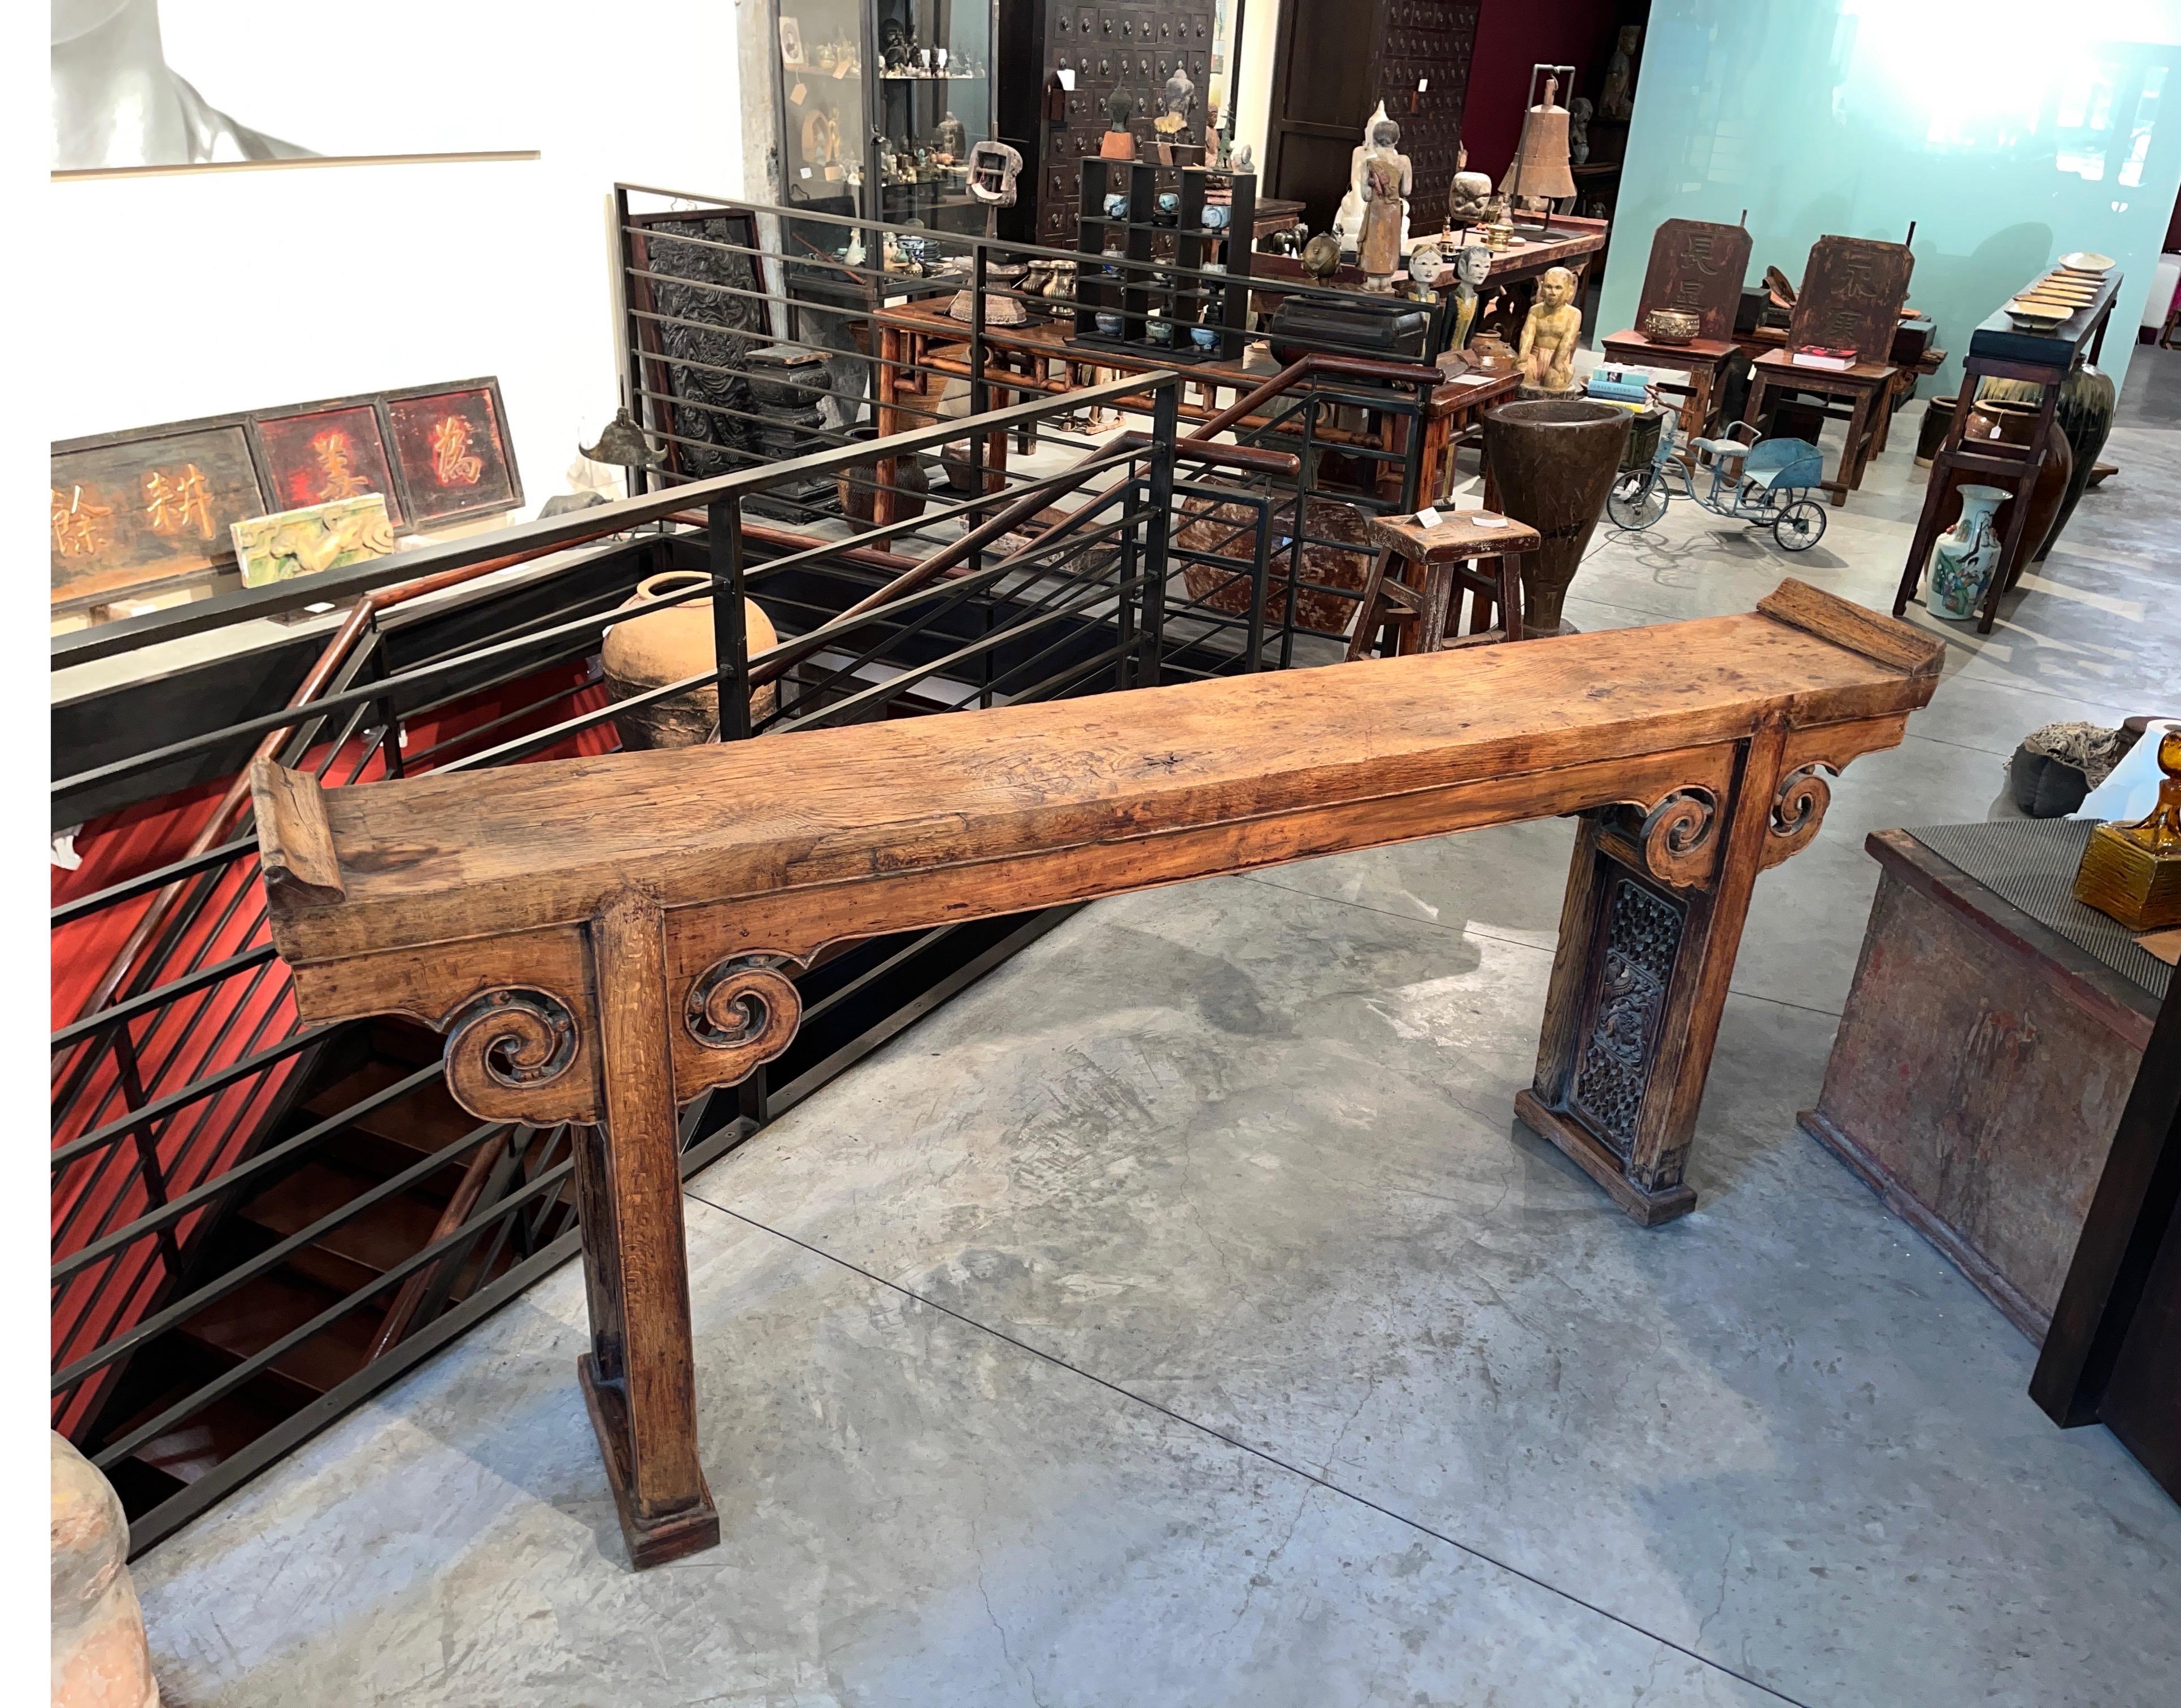 Un classique  Table d'autel chinoise du début du 19e siècle, avec un plateau en bois de chêne massif d'une épaisseur de deux pouces et des extrémités évasées,  et présente une magnifique patine.  Une table d'autel de cette taille aurait été trouvée